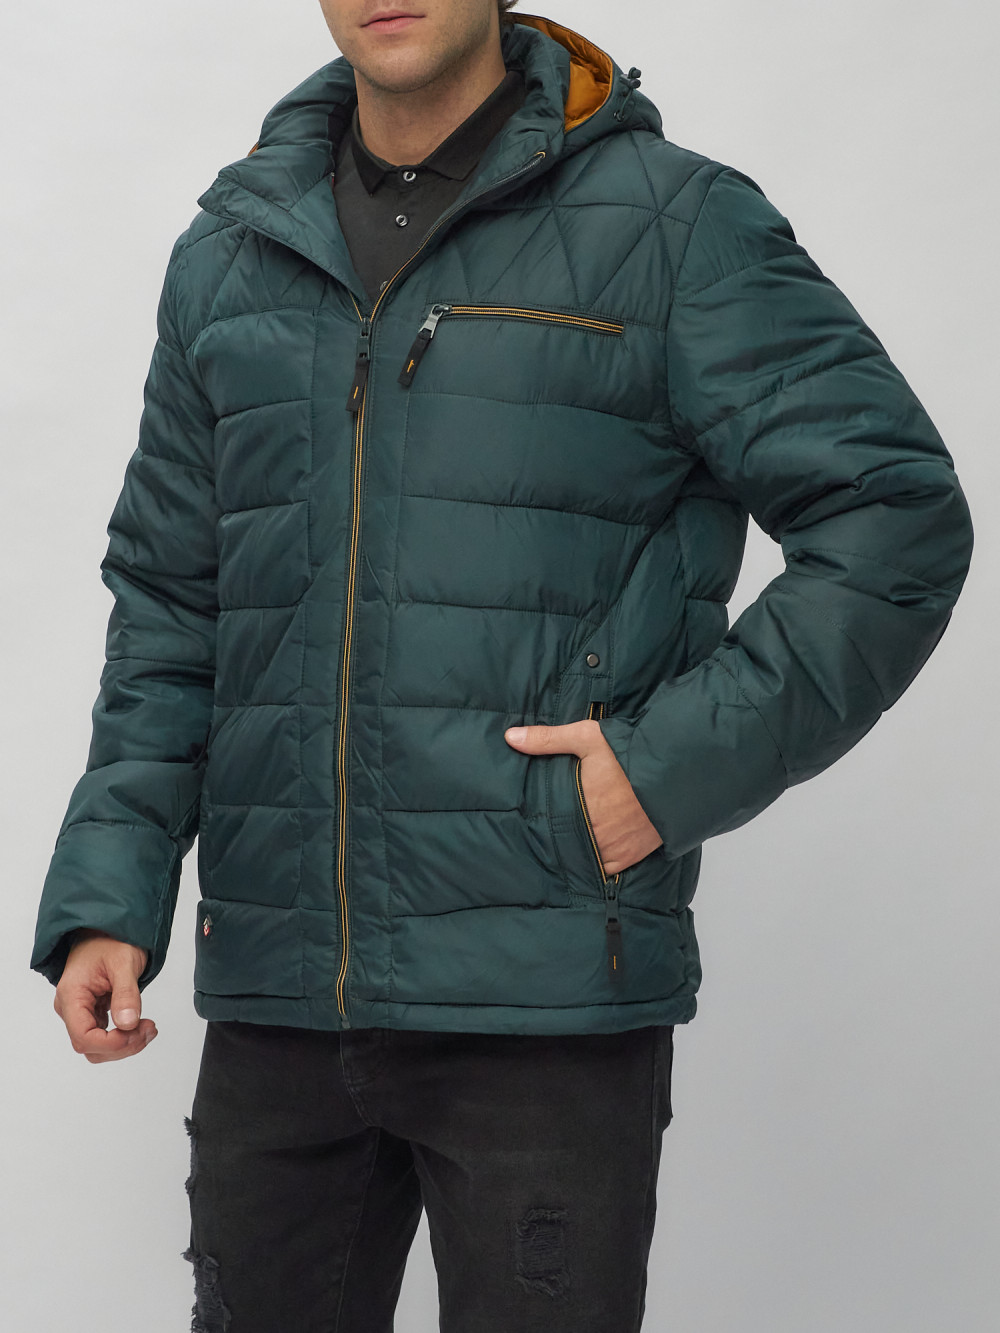 Купить куртку мужскую спортивную весеннюю оптом от производителя недорого в Москве 62187TZ 1